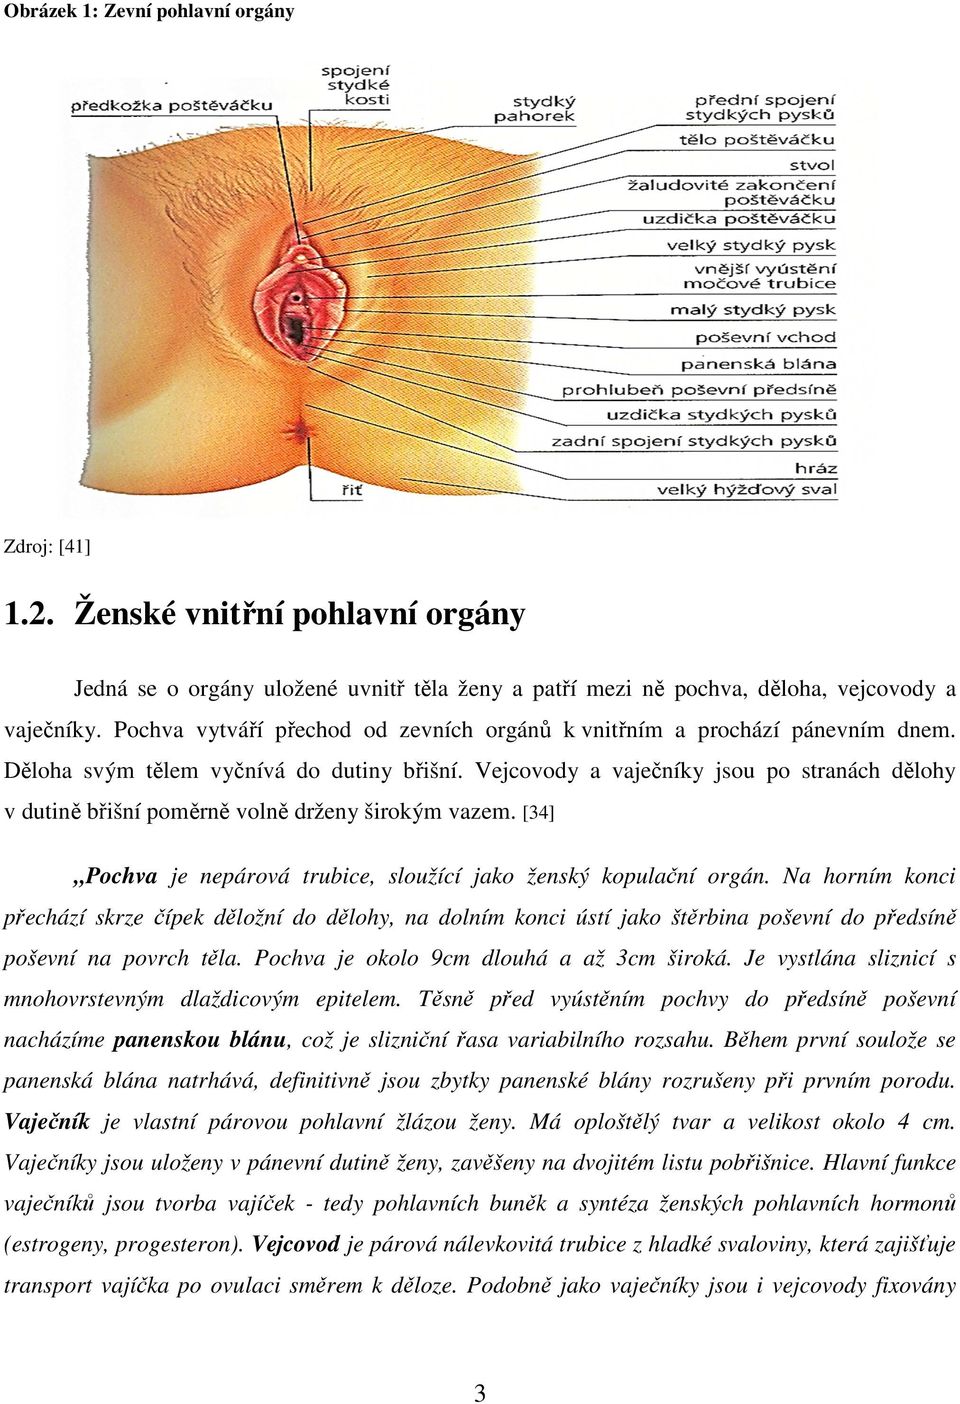 Vejcovody a vaječníky jsou po stranách dělohy v dutině břišní poměrně volně drženy širokým vazem. [34] Pochva je nepárová trubice, sloužící jako ženský kopulační orgán.